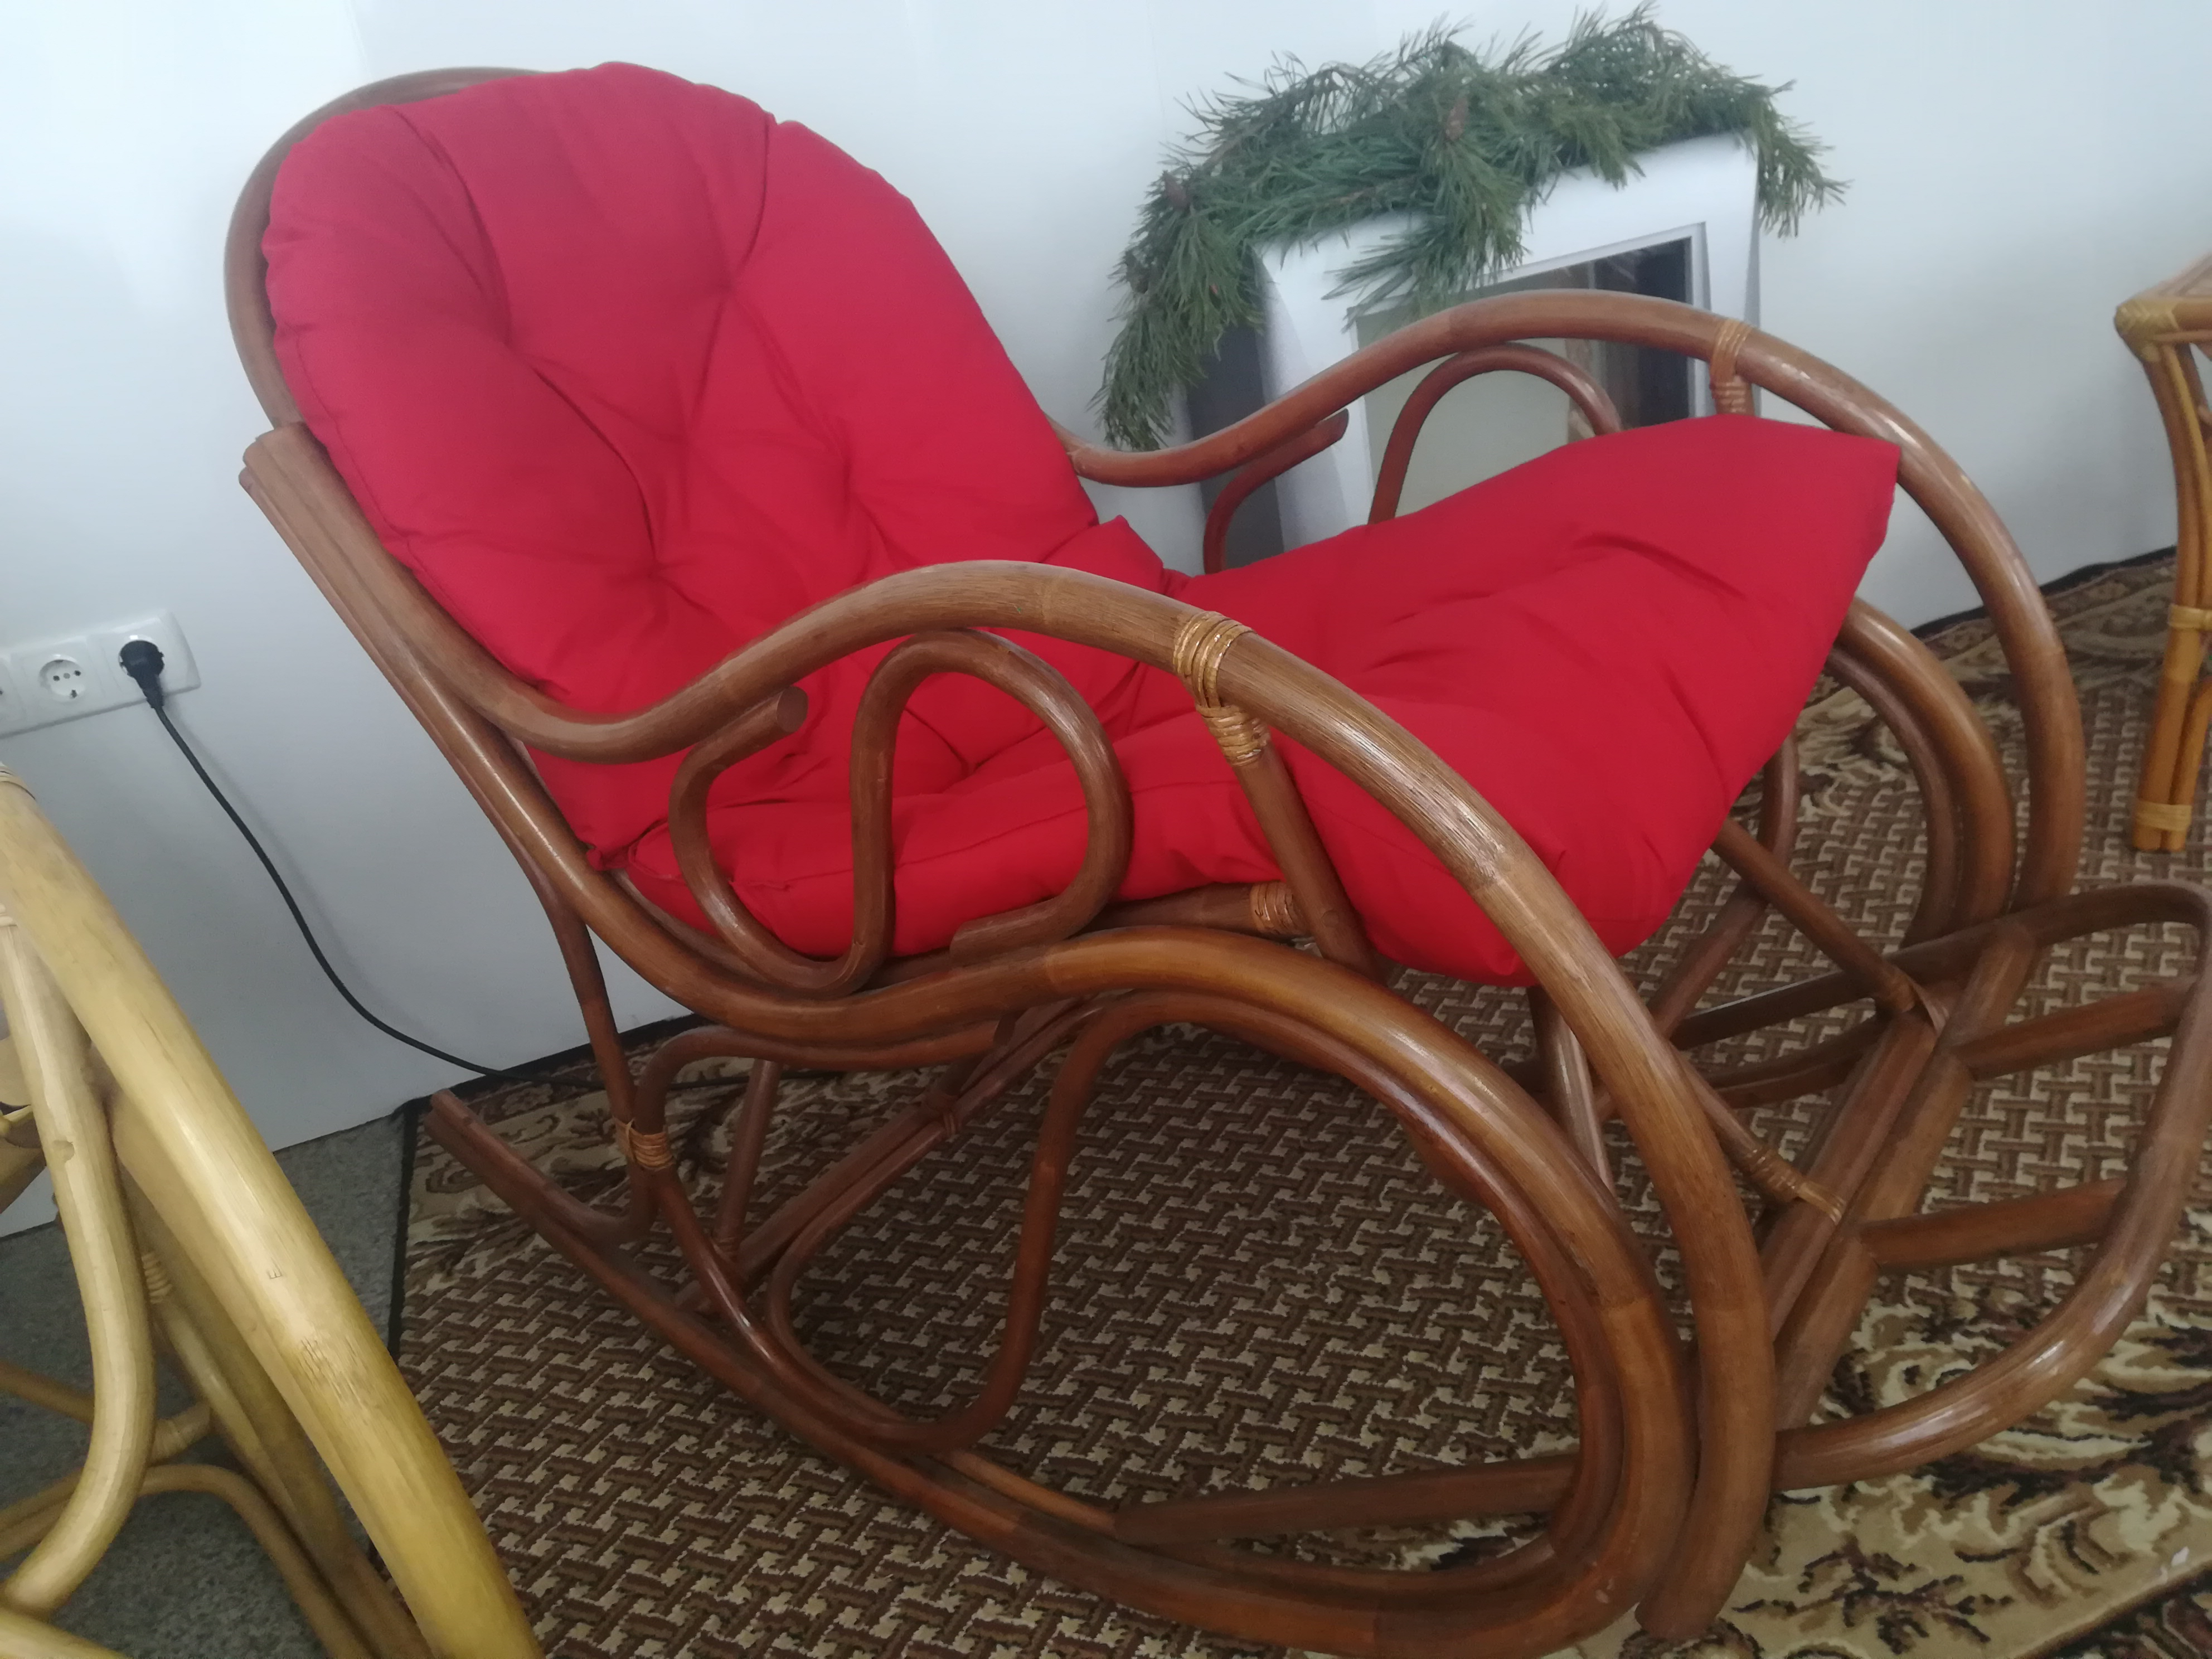 Кресло-качалка из натурального ротанга